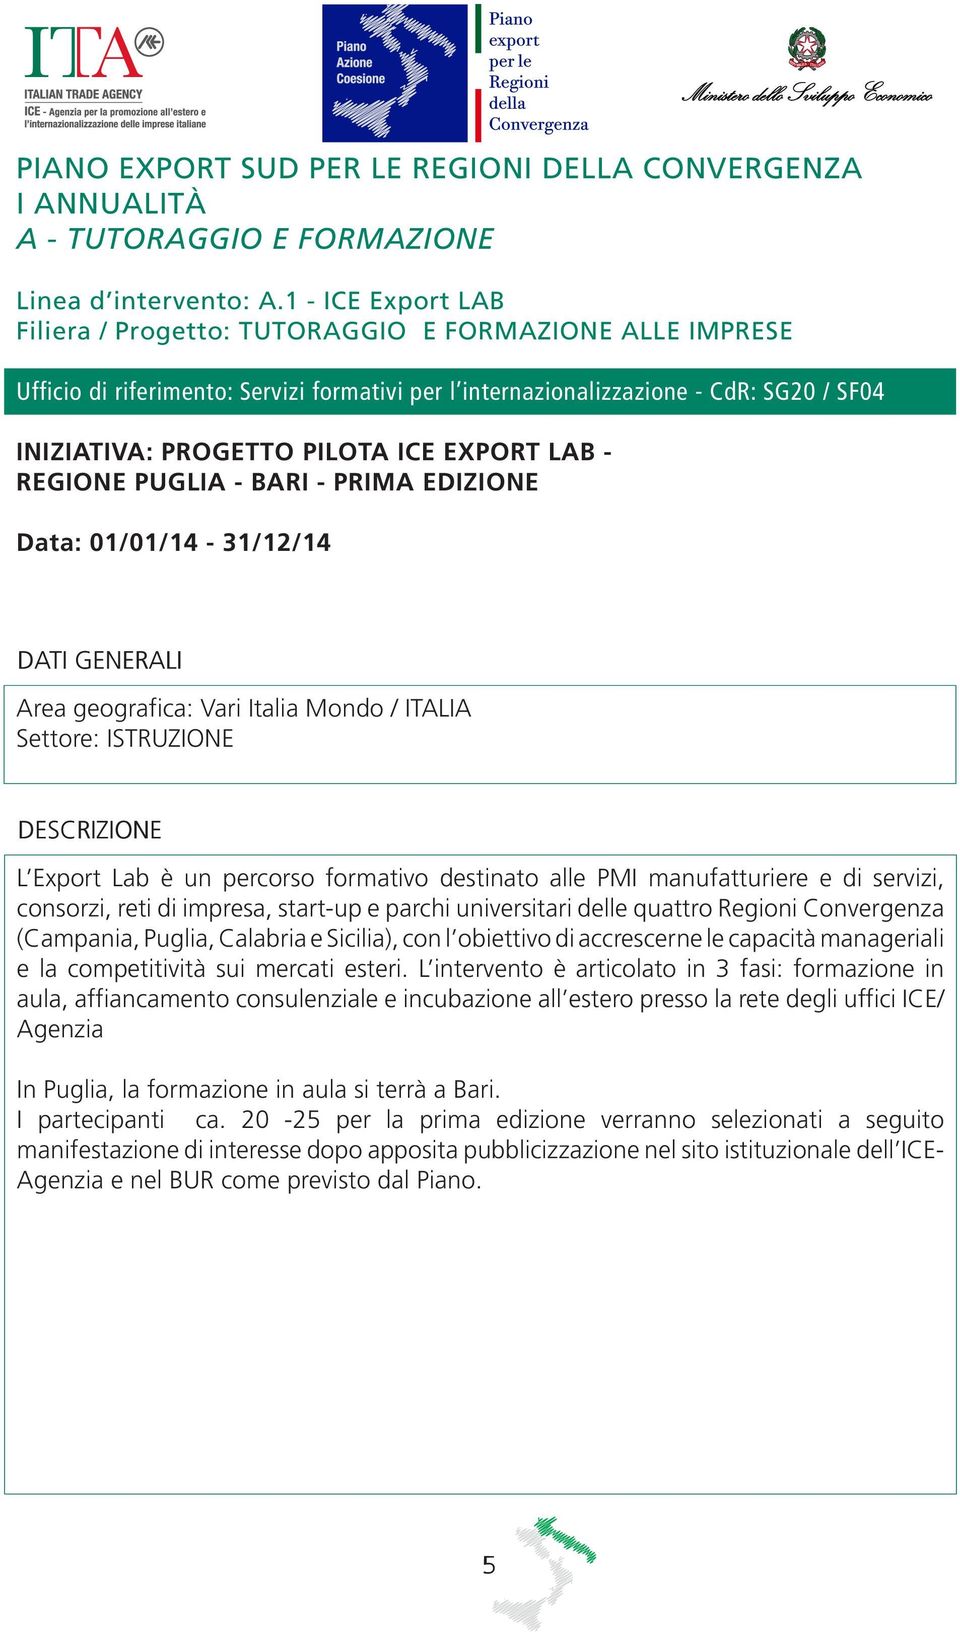 EXPORT LAB - REGIONE PUGLIA - BARI - PRIMA EDIZIONE Data: 01/01/14-31/12/14 Area geografica: Vari Italia Mondo / ITALIA Settore: ISTRUZIONE L Export Lab è un percorso formativo destinato alle PMI